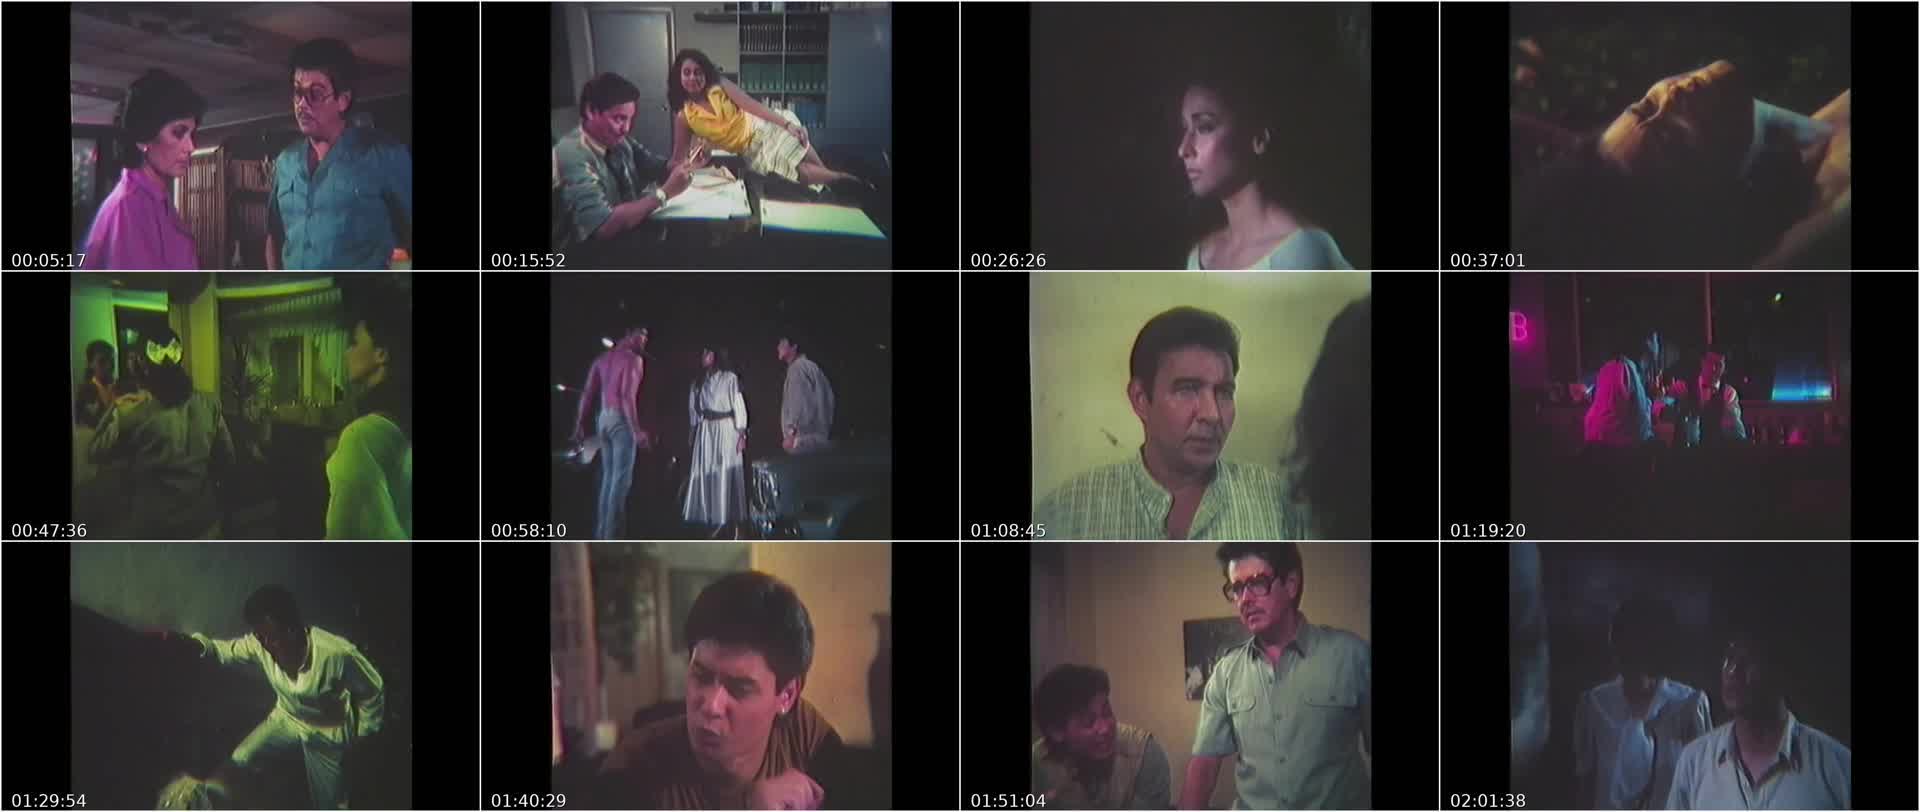 Ang Babaeng Nawawala Sa Sarili 1989 full movie